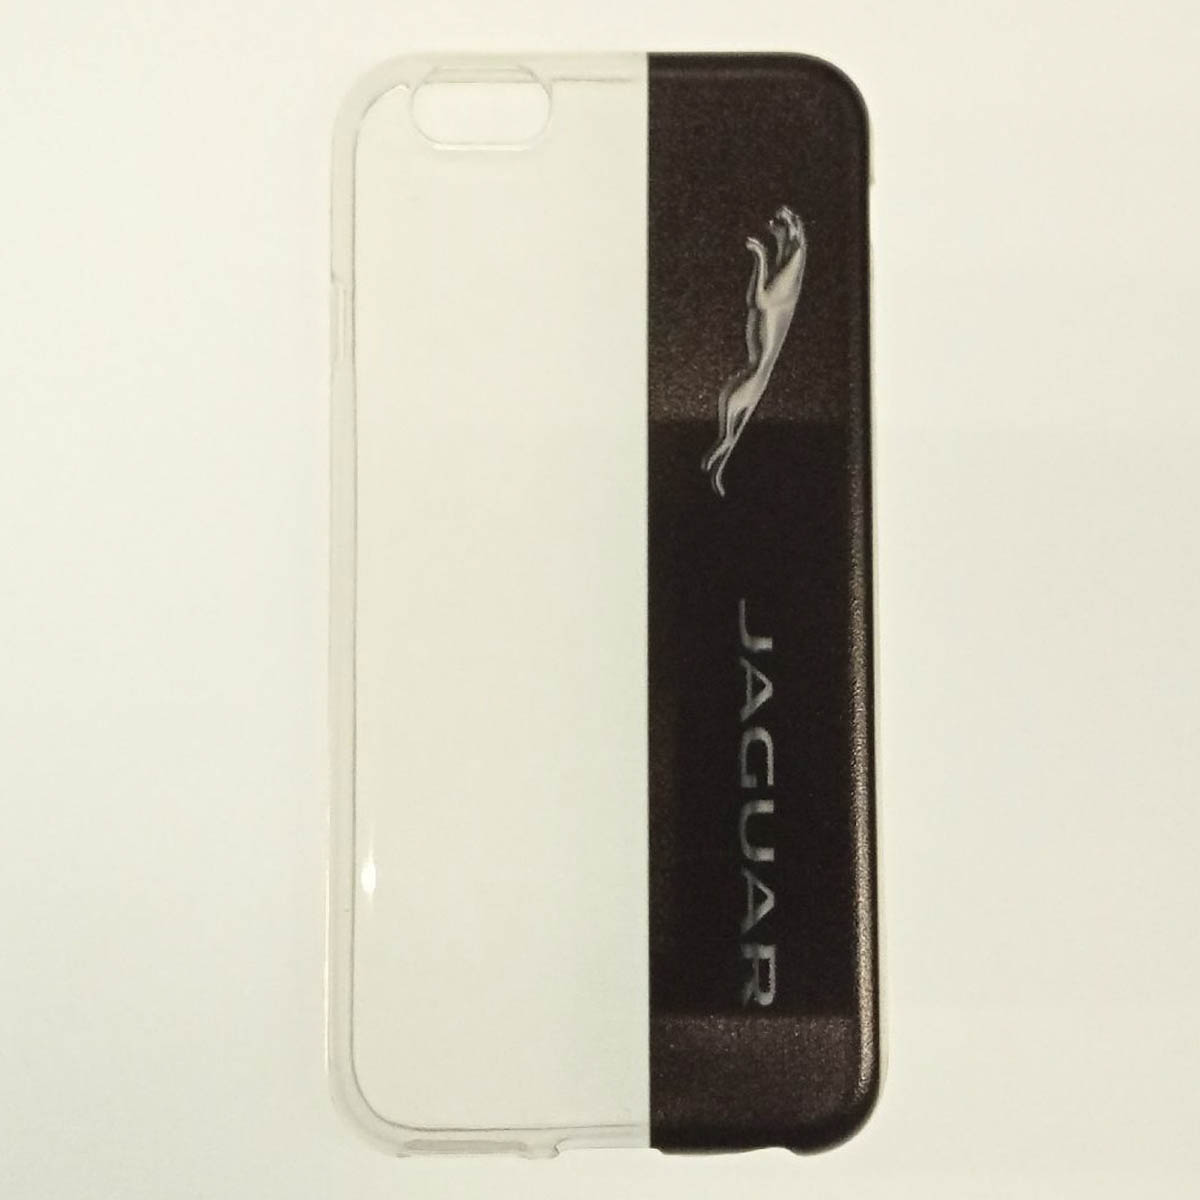 Силиконовый чехол для iPhone 6/6S марки автомобиля "Jaguar" (прозрачный/европакет).